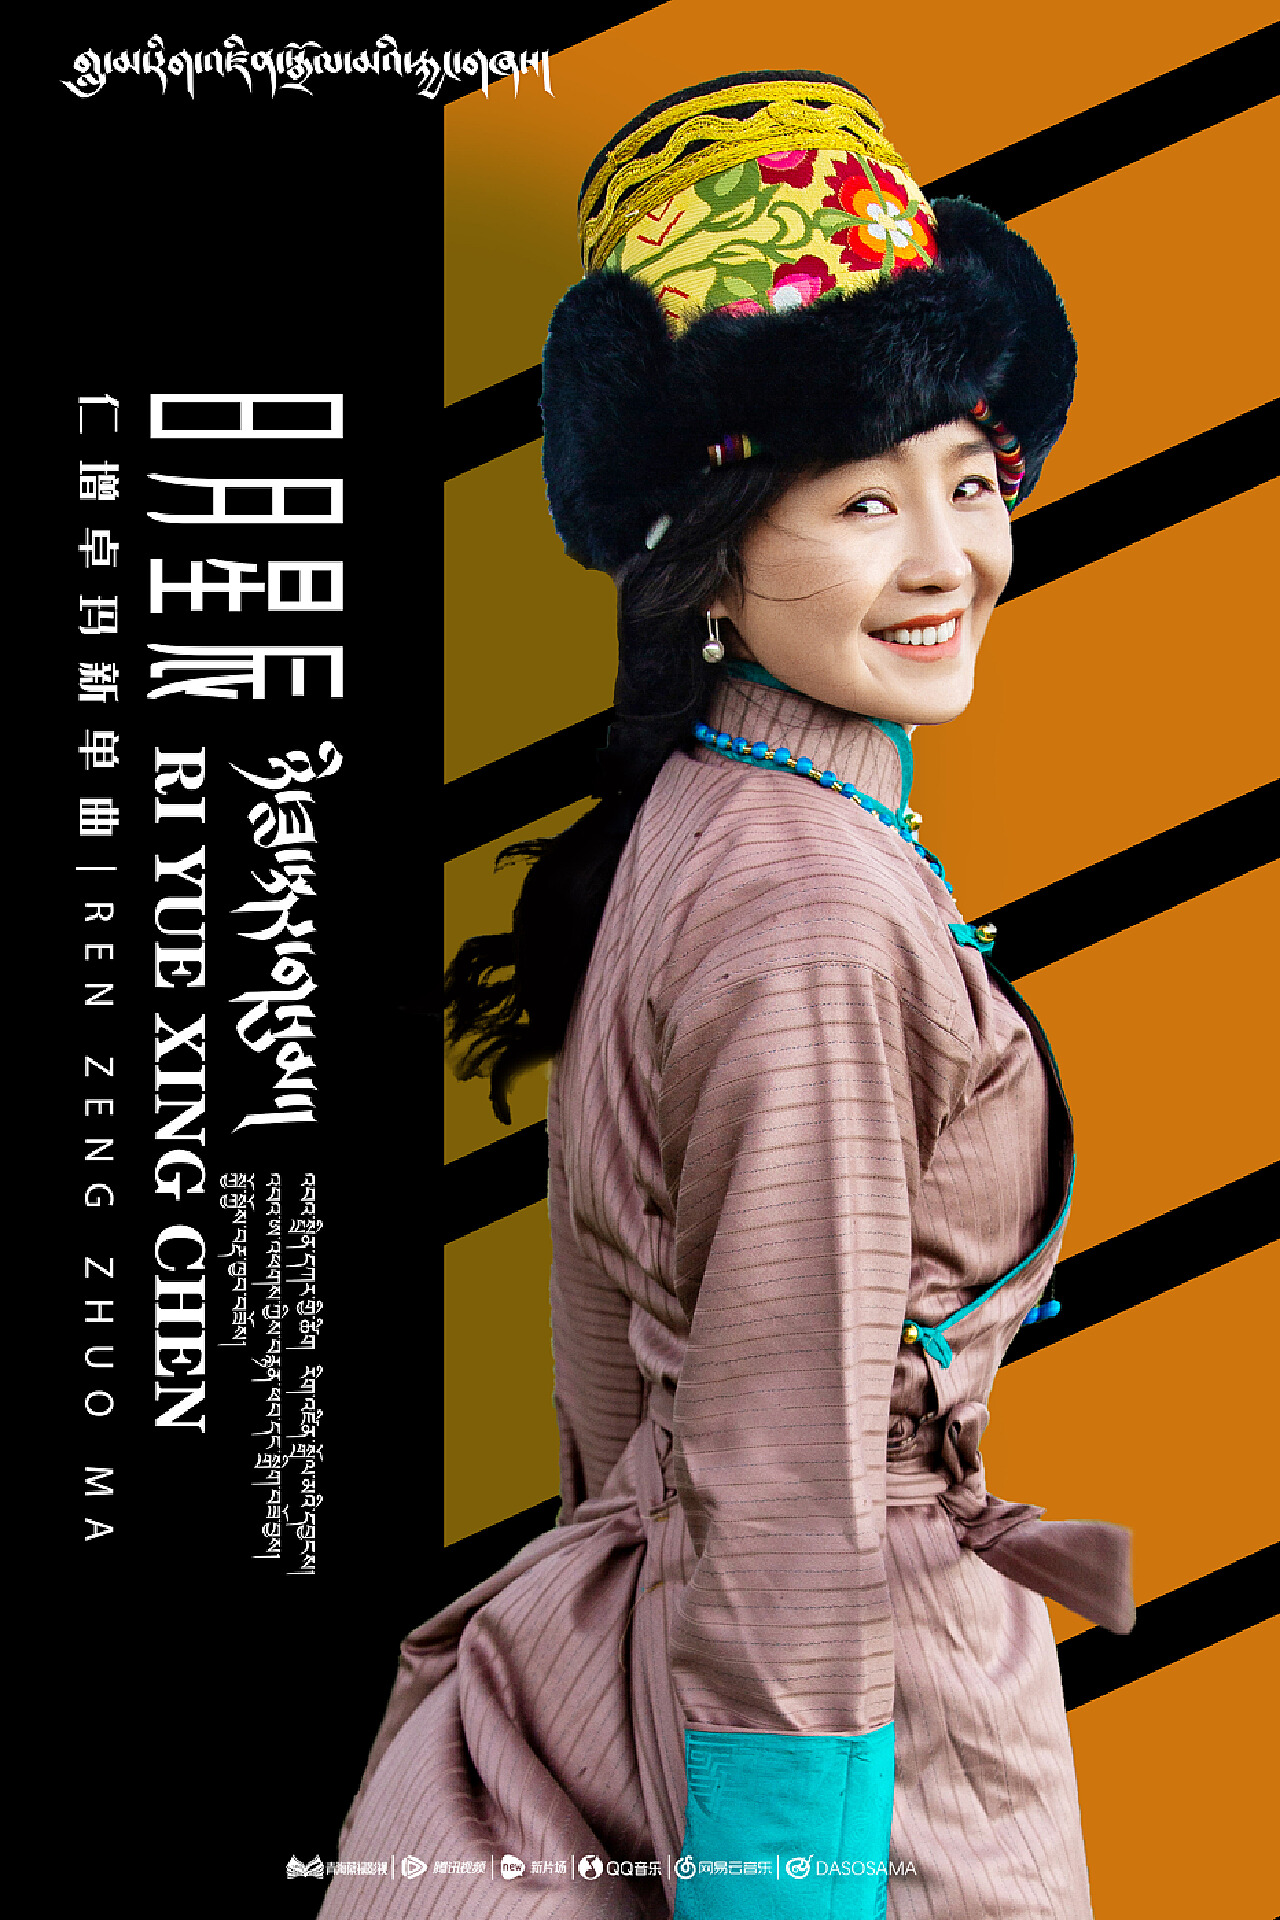 藏族歌手金曲集（一） - 歌单 - 网易云音乐